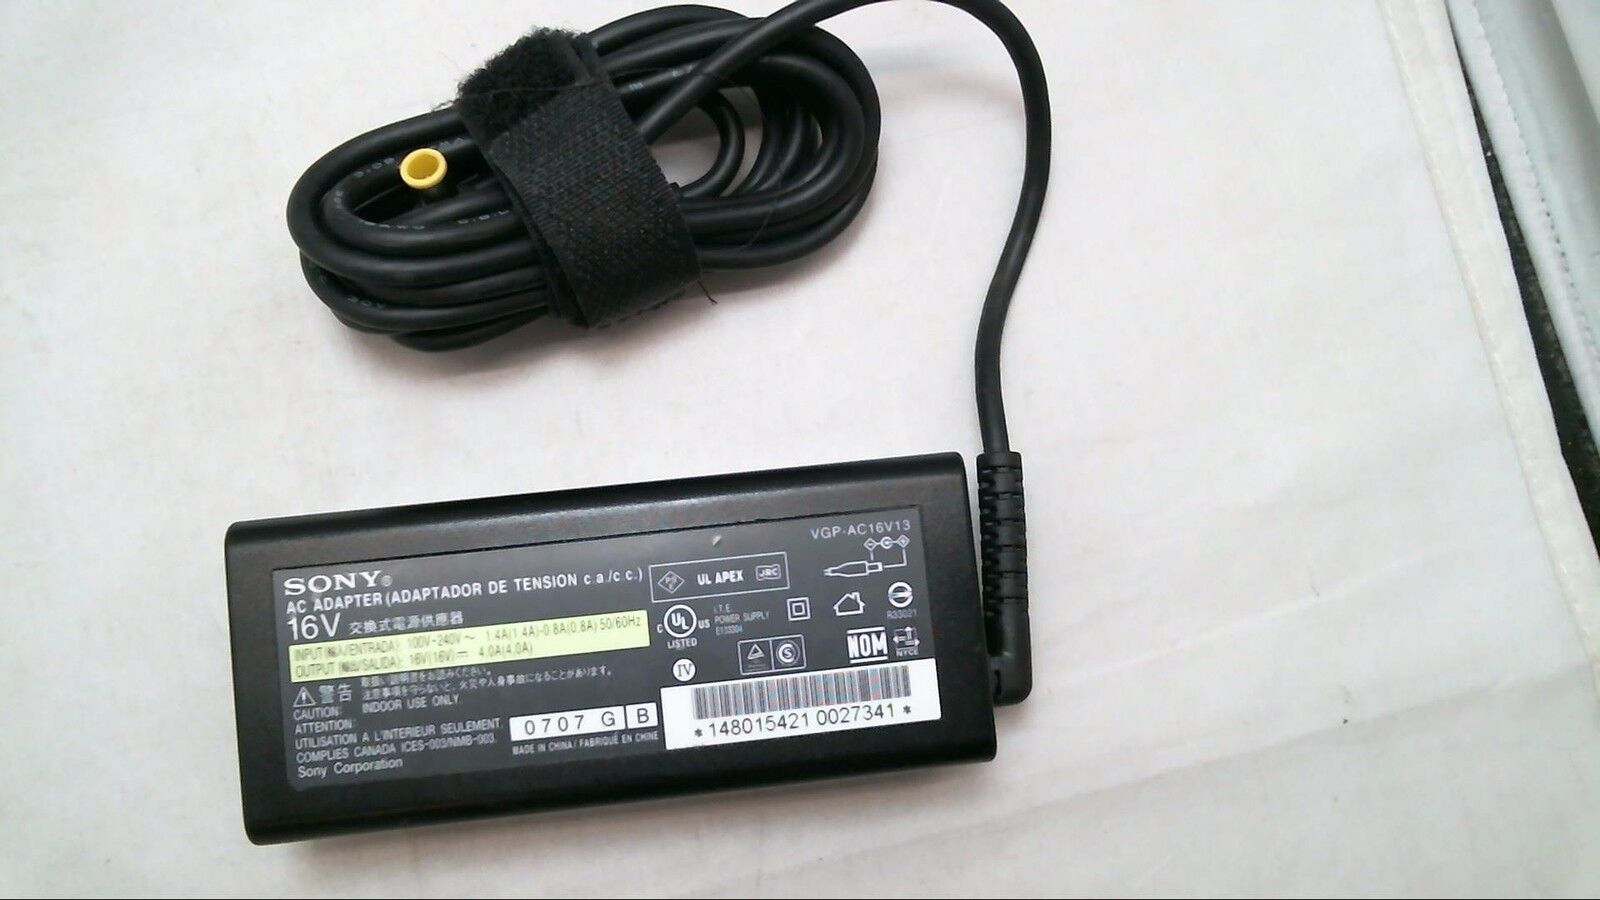 Genuine Original AC Power Adapter Sony VAIO VGP-AC16V8 VGP-AC16V13 VGP-AC16V14